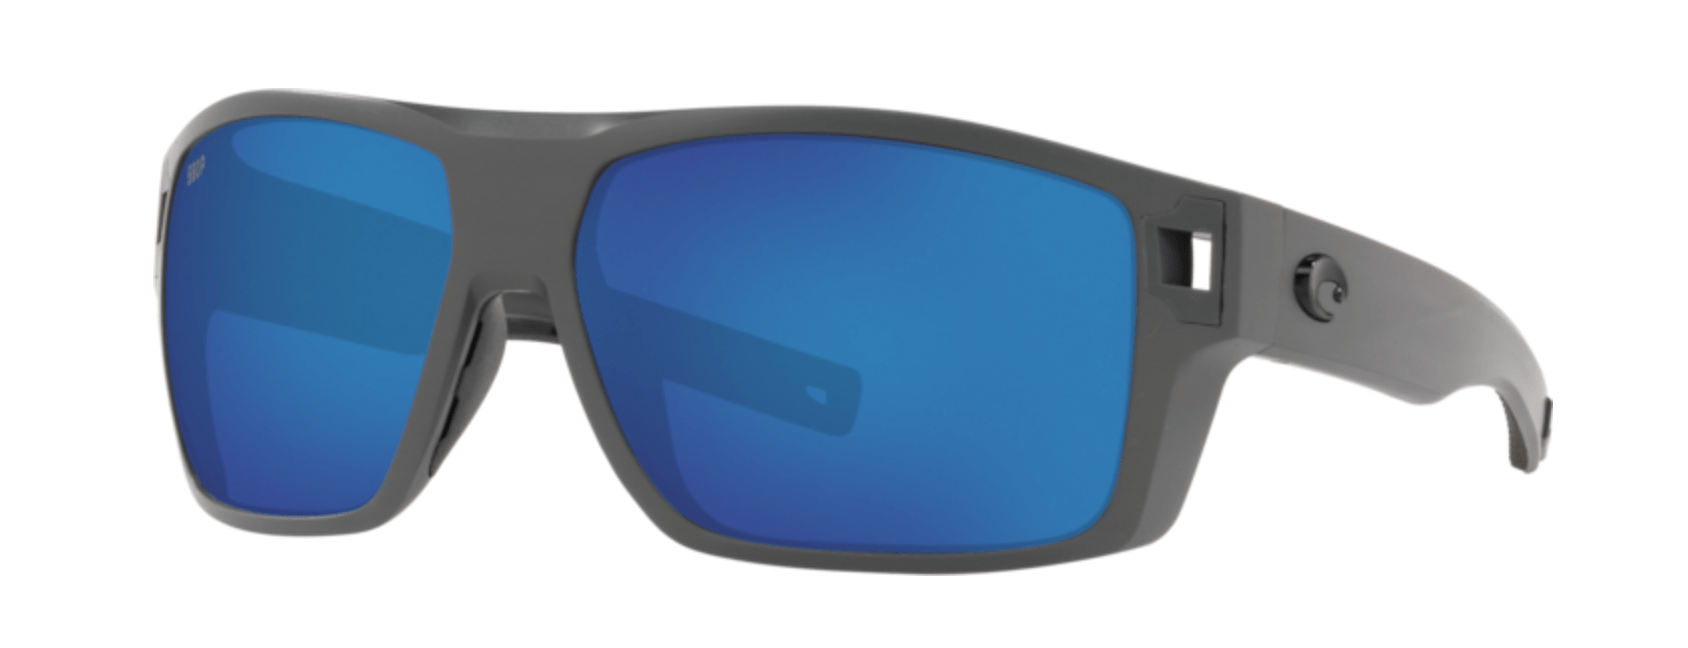 Costa Del Mar Diego Polarized Sunglasses (580P - Polycarbonate